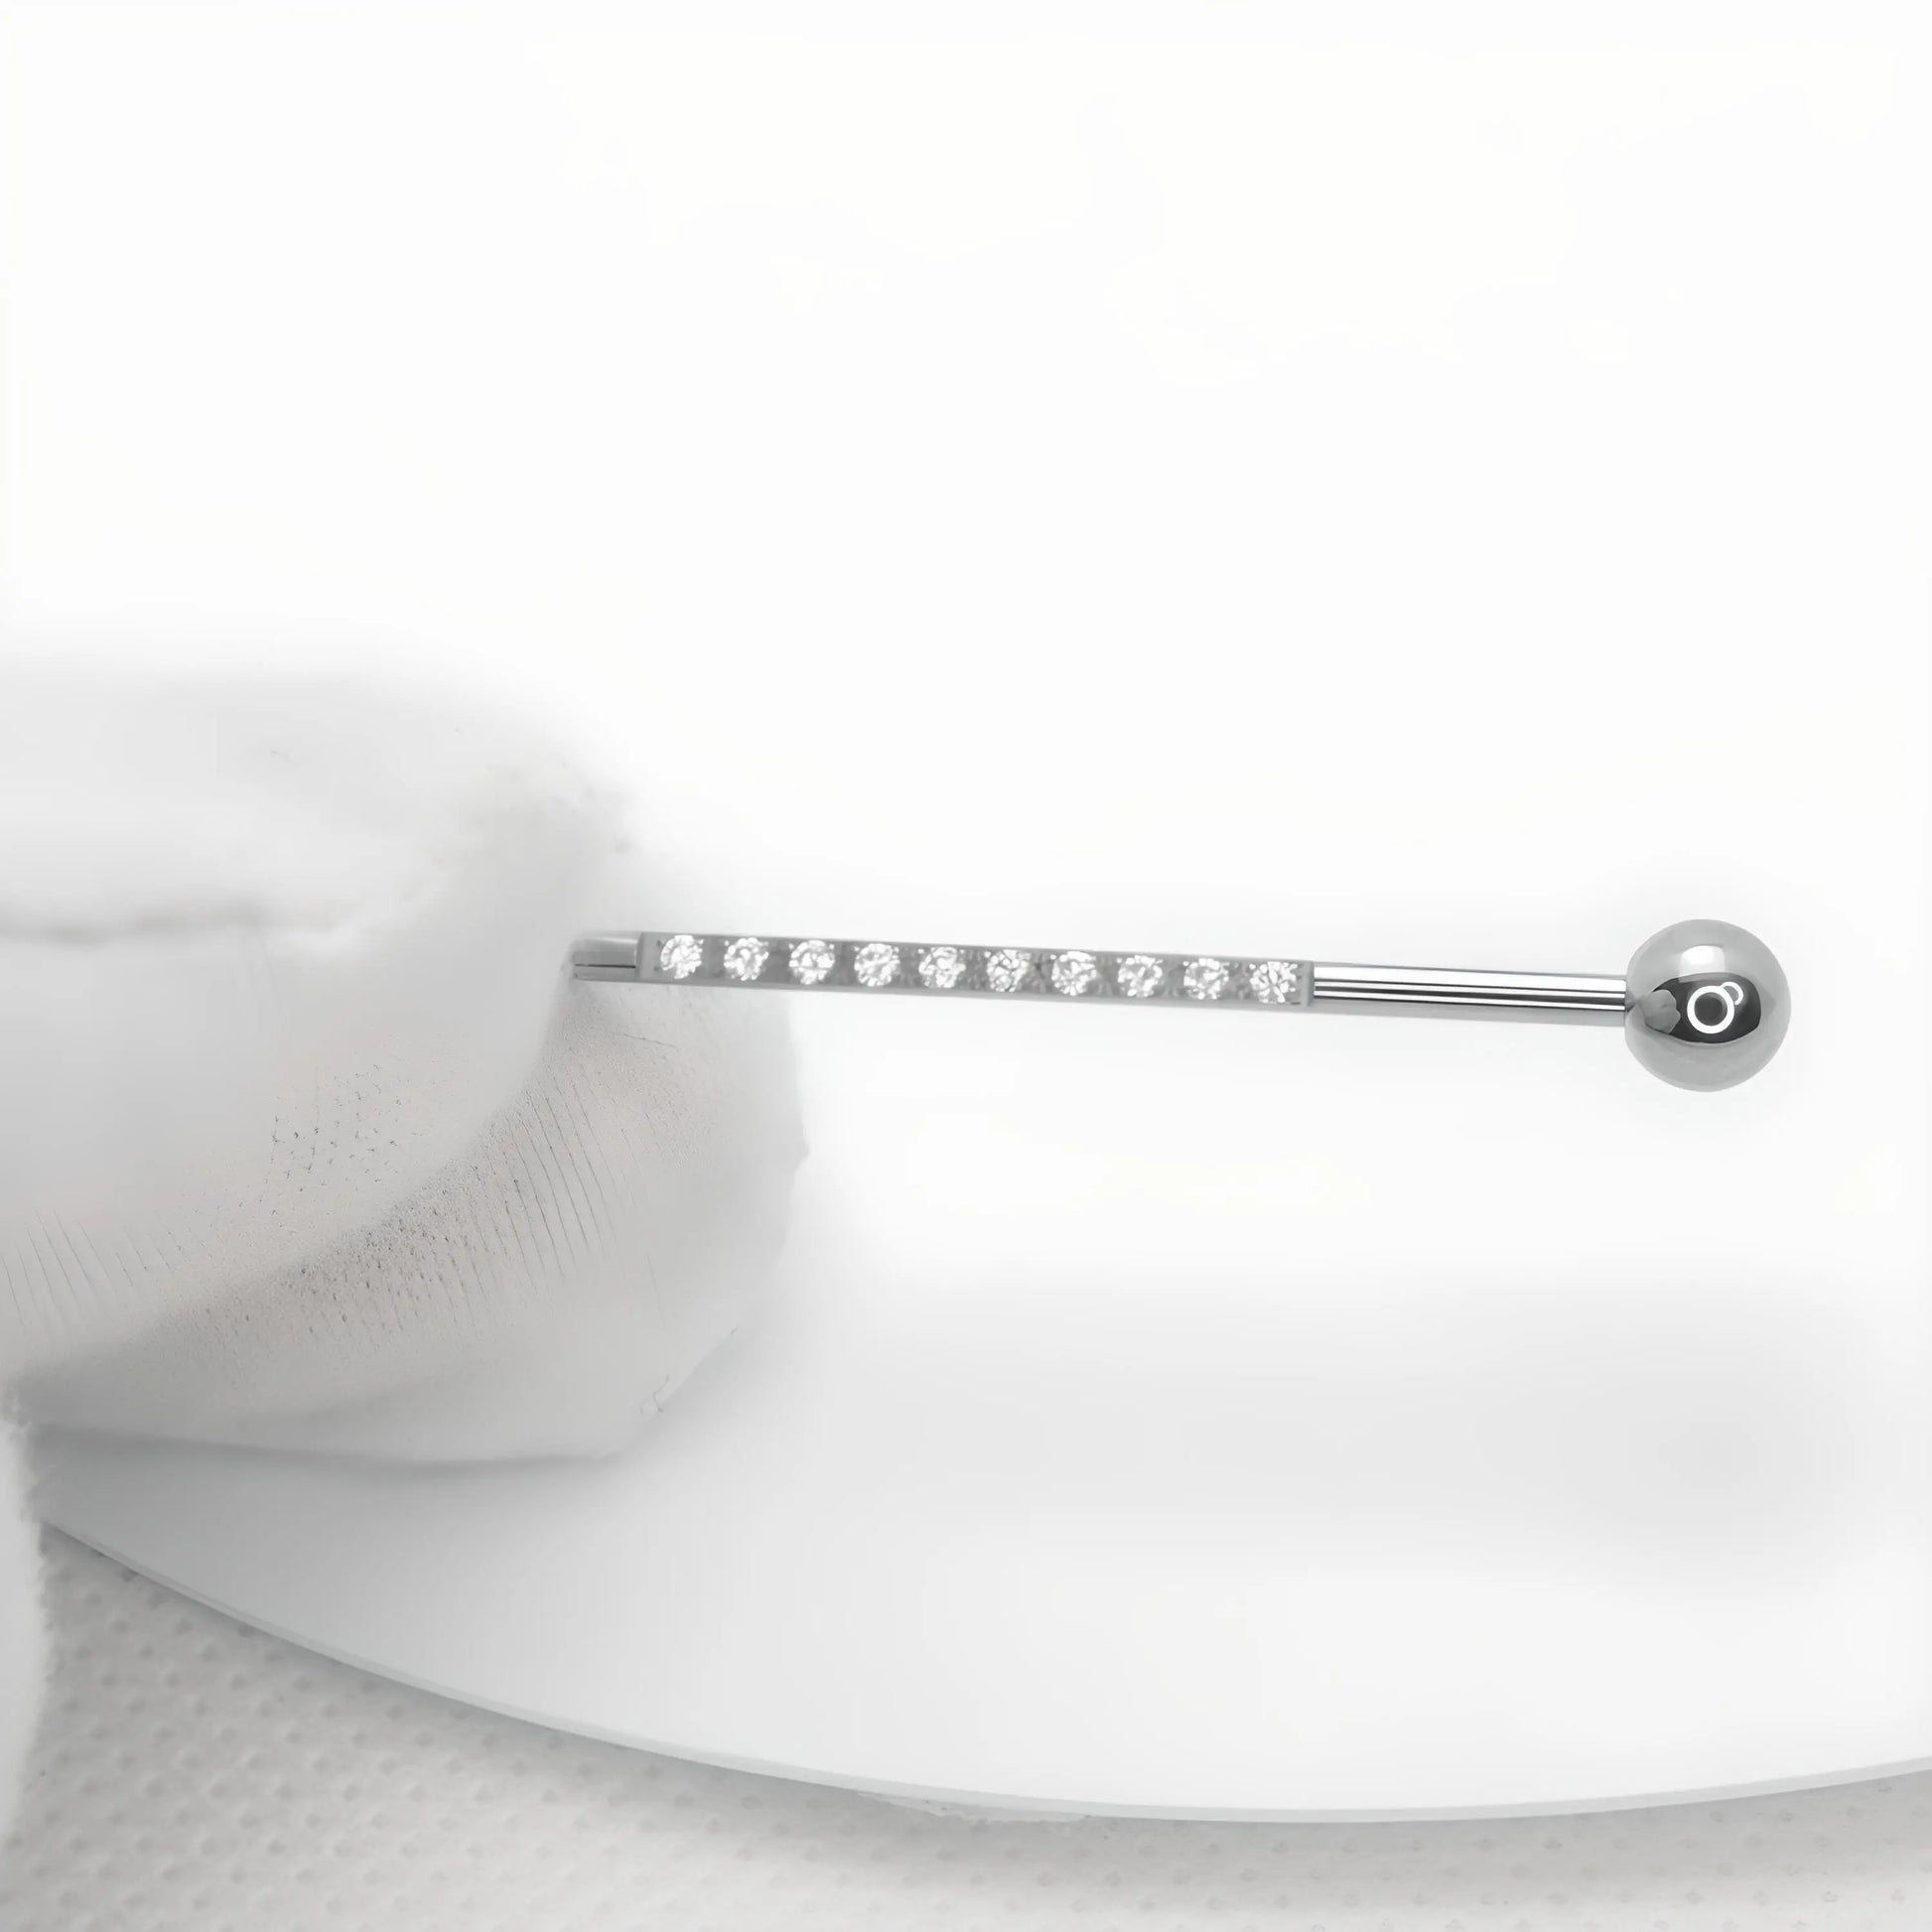 Présentation d'une barre de piercing industriel d'une longueur de 38 mm, tenue dans un gant de coton